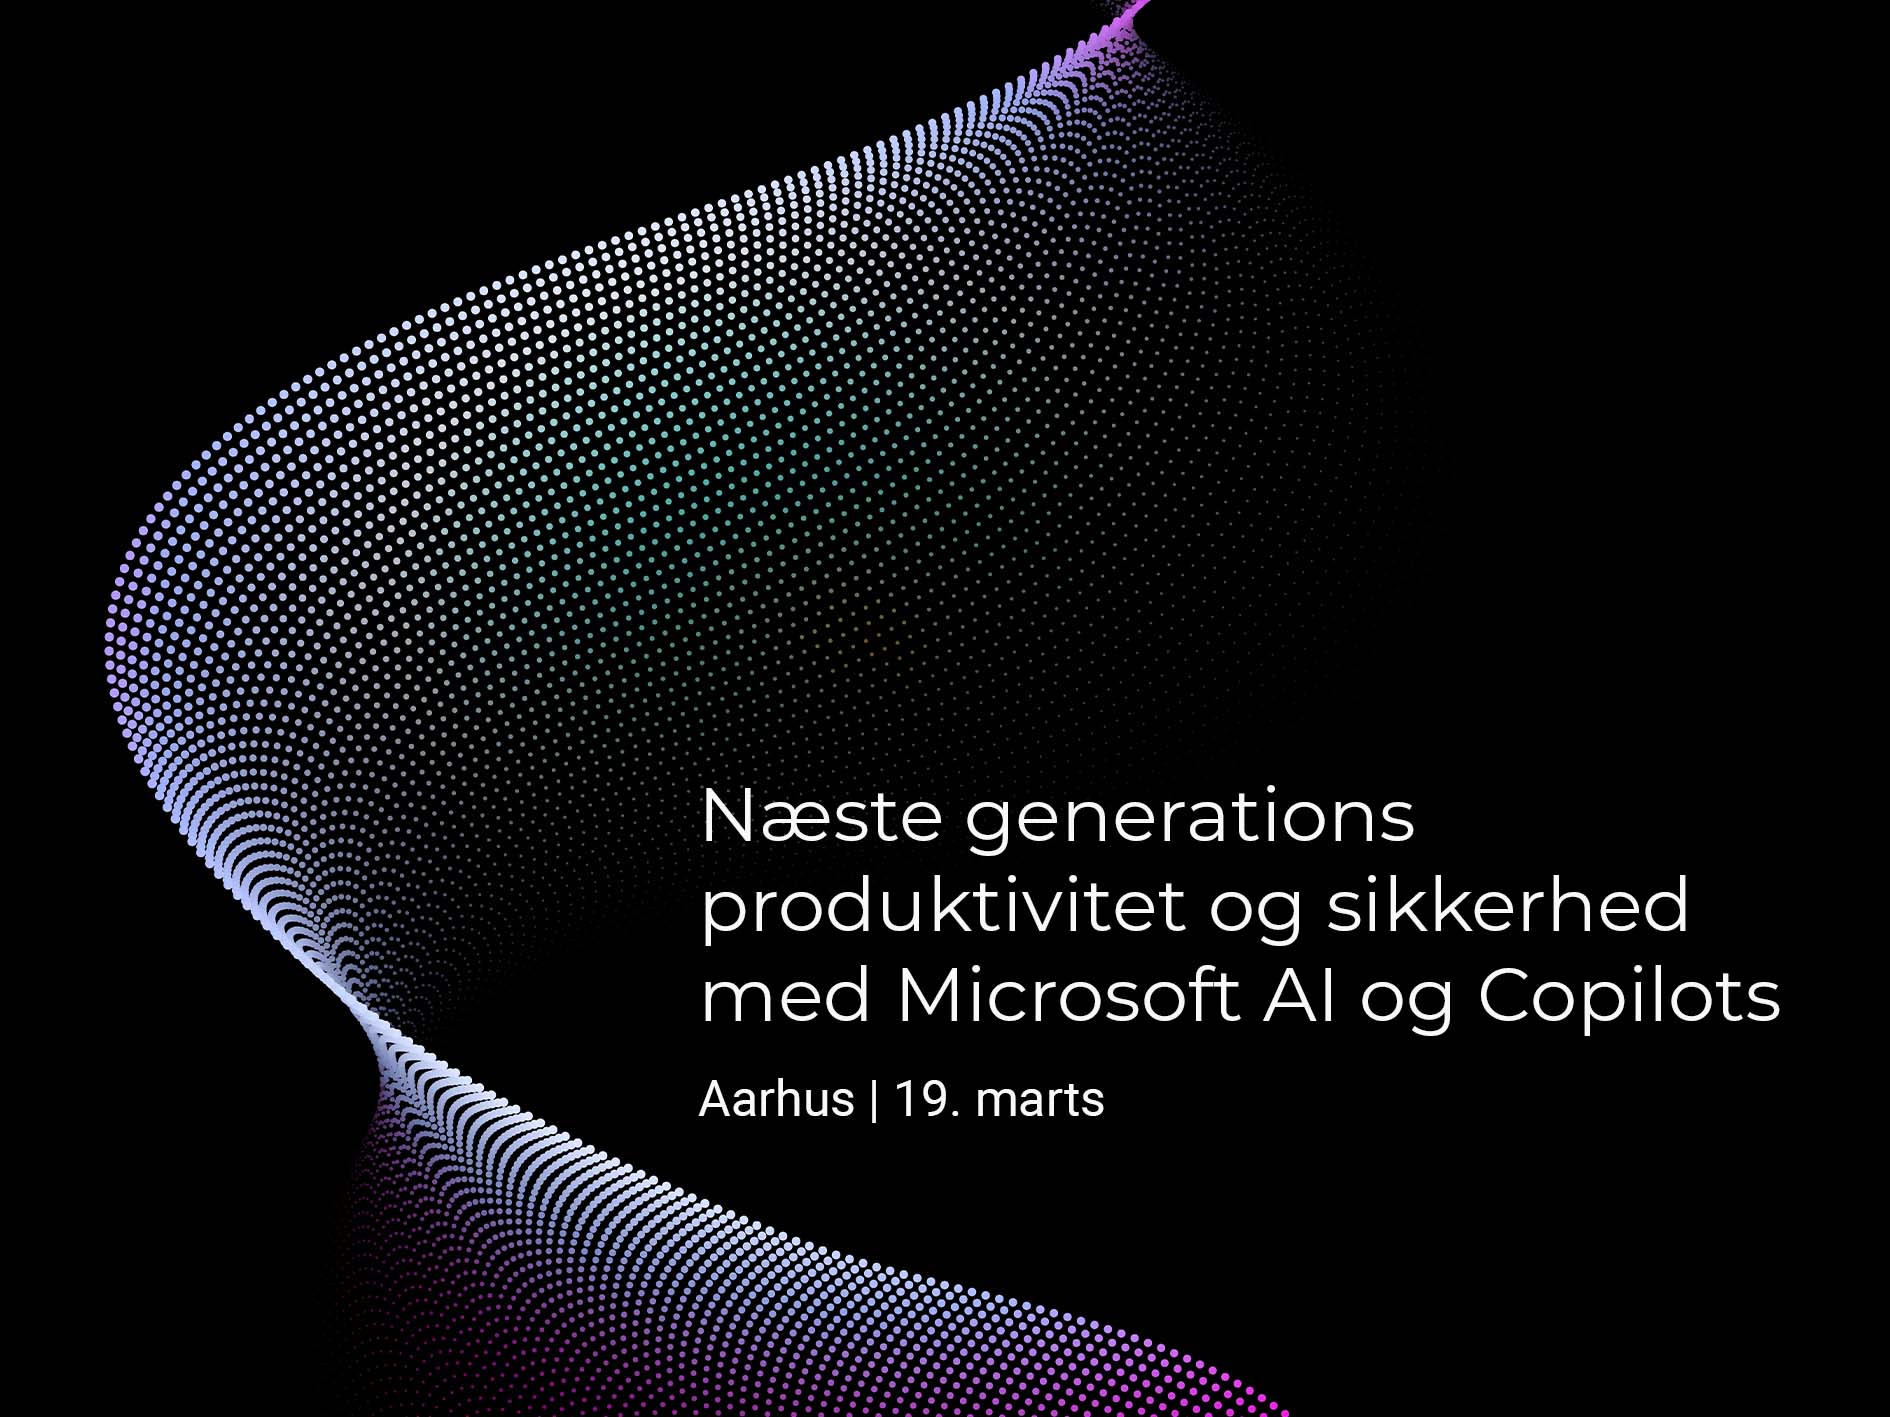 Aarhus: Næste generations produktivitet og sikkerhed med  Microsoft AI og Copilots